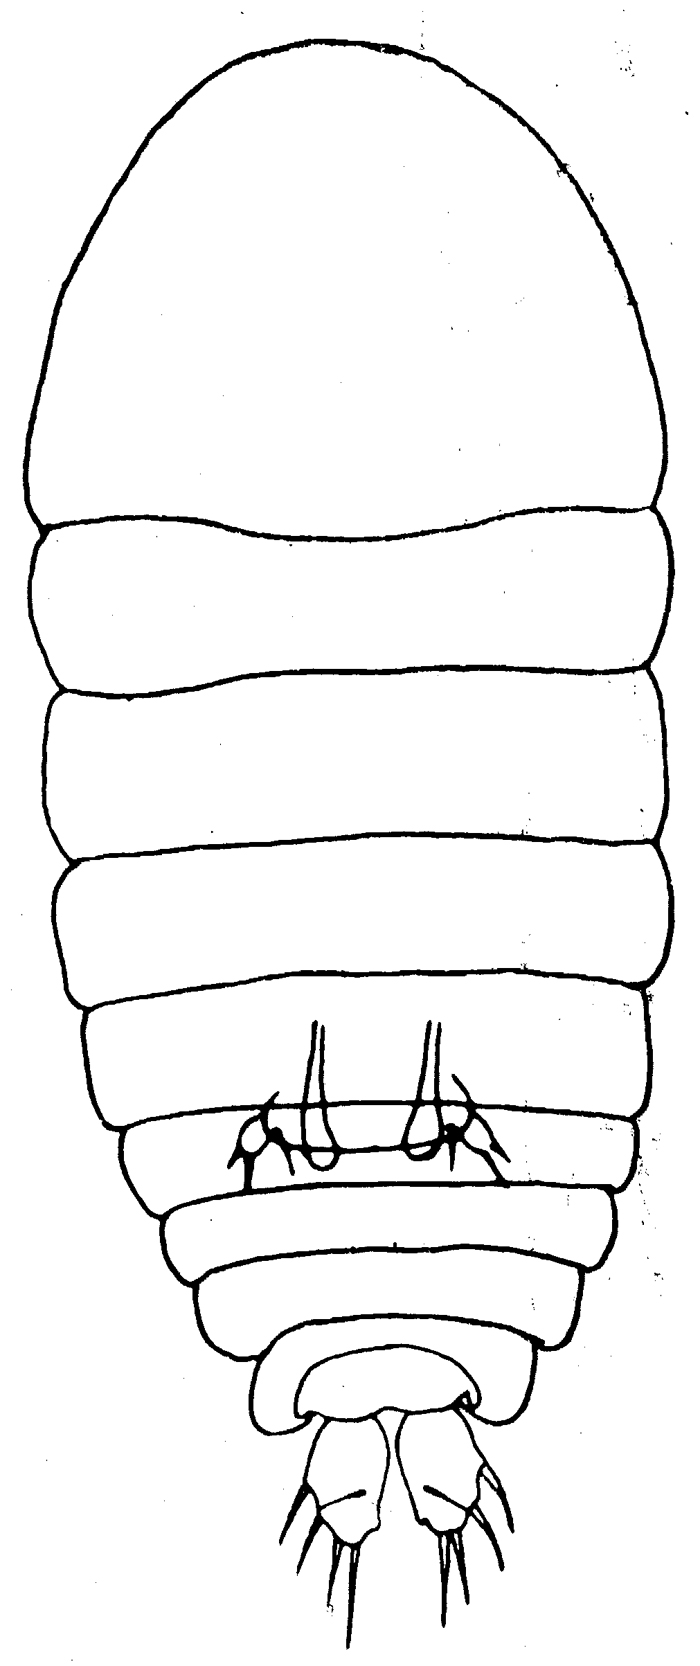 Espce Sapphirina gemma - Planche 3 de figures morphologiques